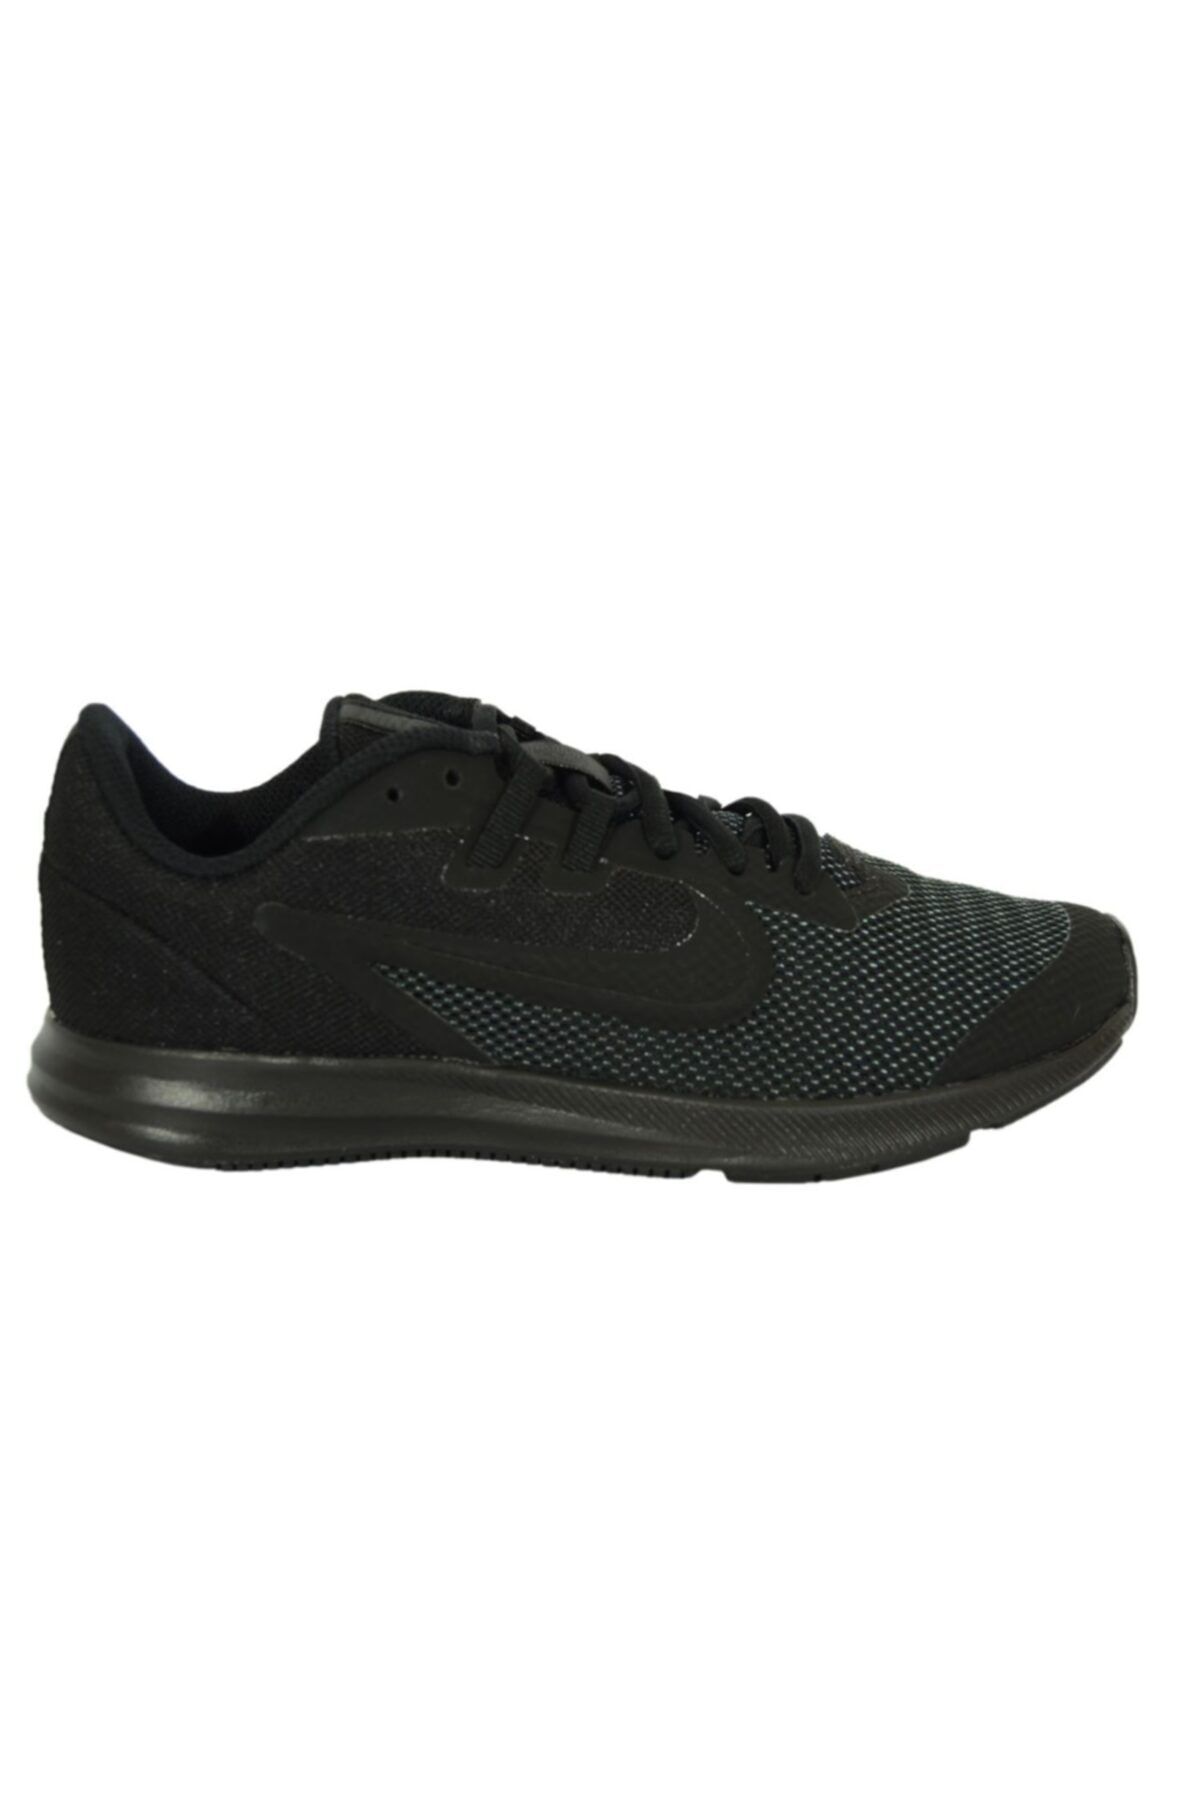 Nike Downshifter 9 Koşu Ayakkabısı Ar4135-001